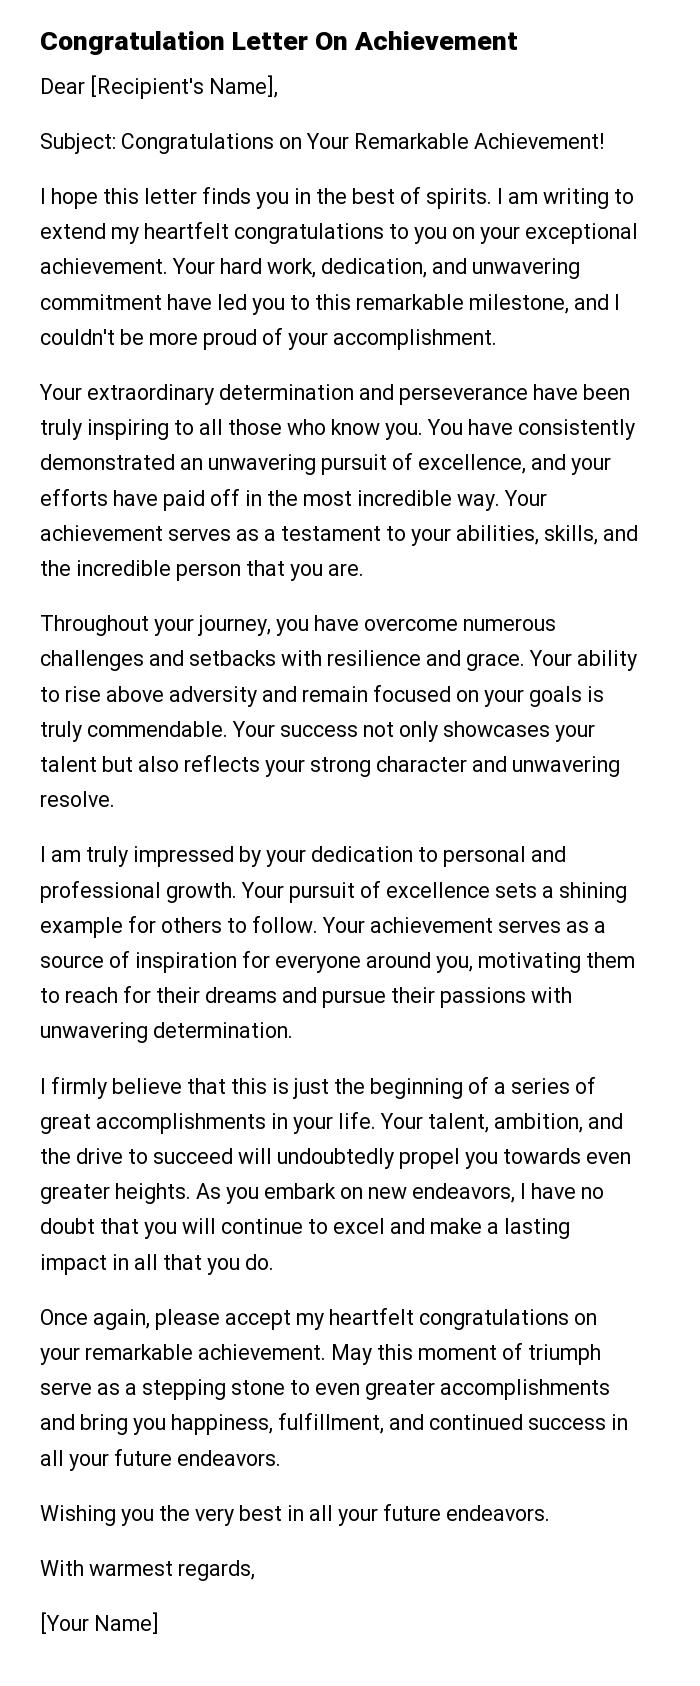 Congratulation Letter On Achievement